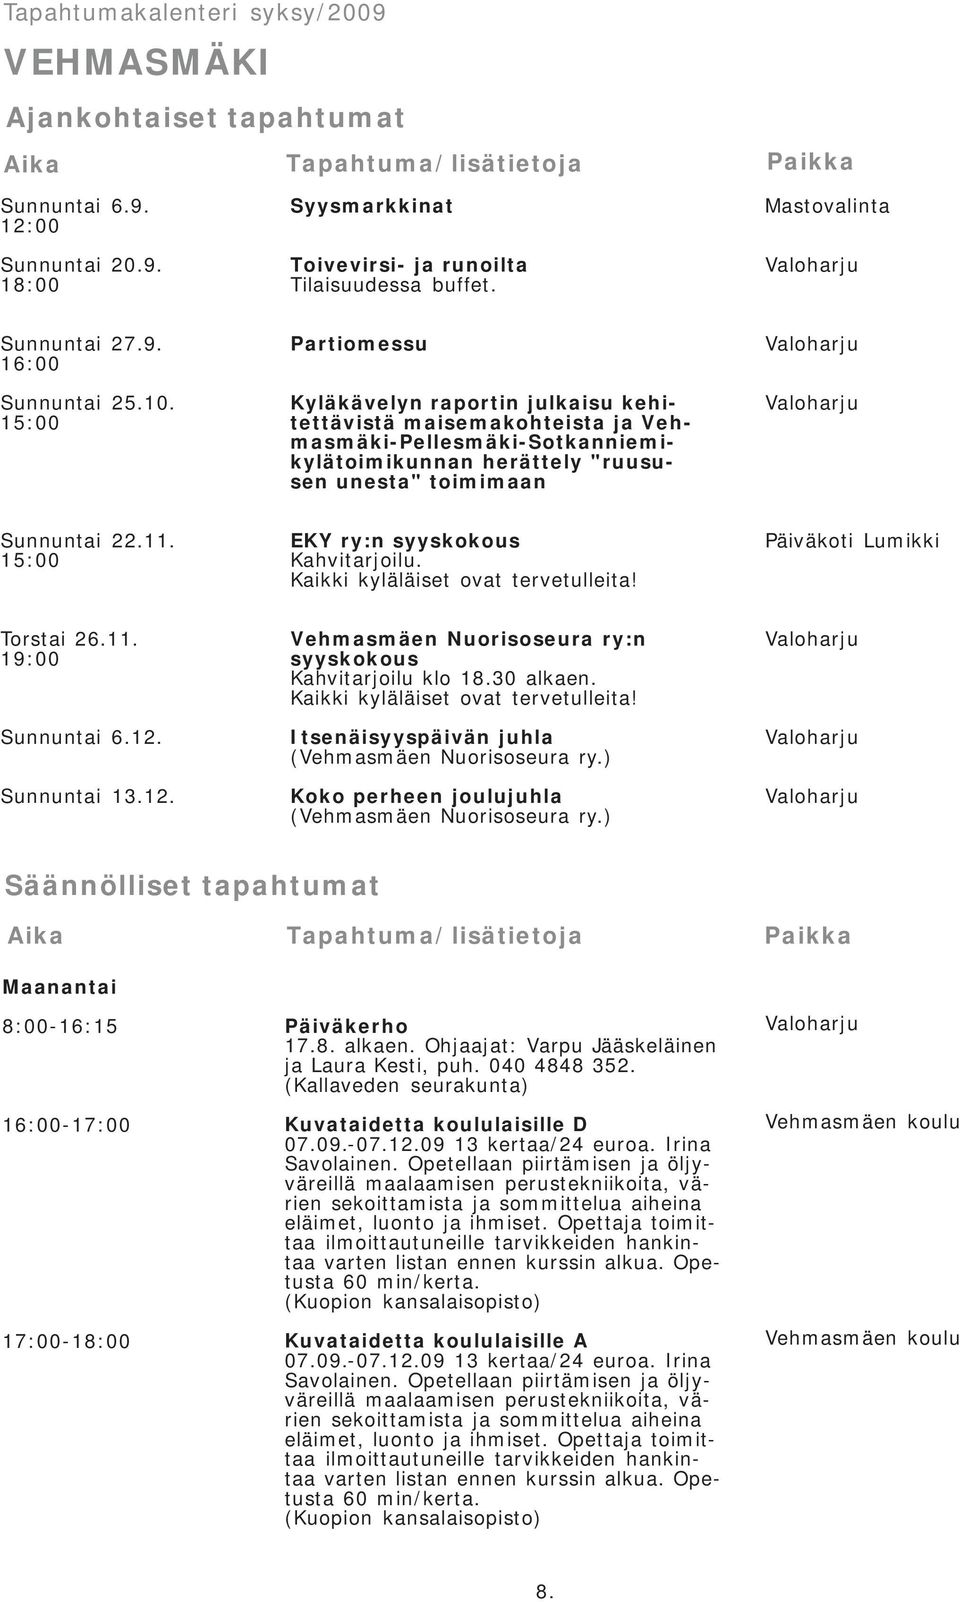 15:00 Partiomessu Kyläkävelyn raportin julkaisu kehitettävistä maisemakohteista ja Vehmasmäki-Pellesmäki-Sotkanniemikylätoimikunnan herättely "ruususen unesta" toimimaan Sunnuntai 22.11.